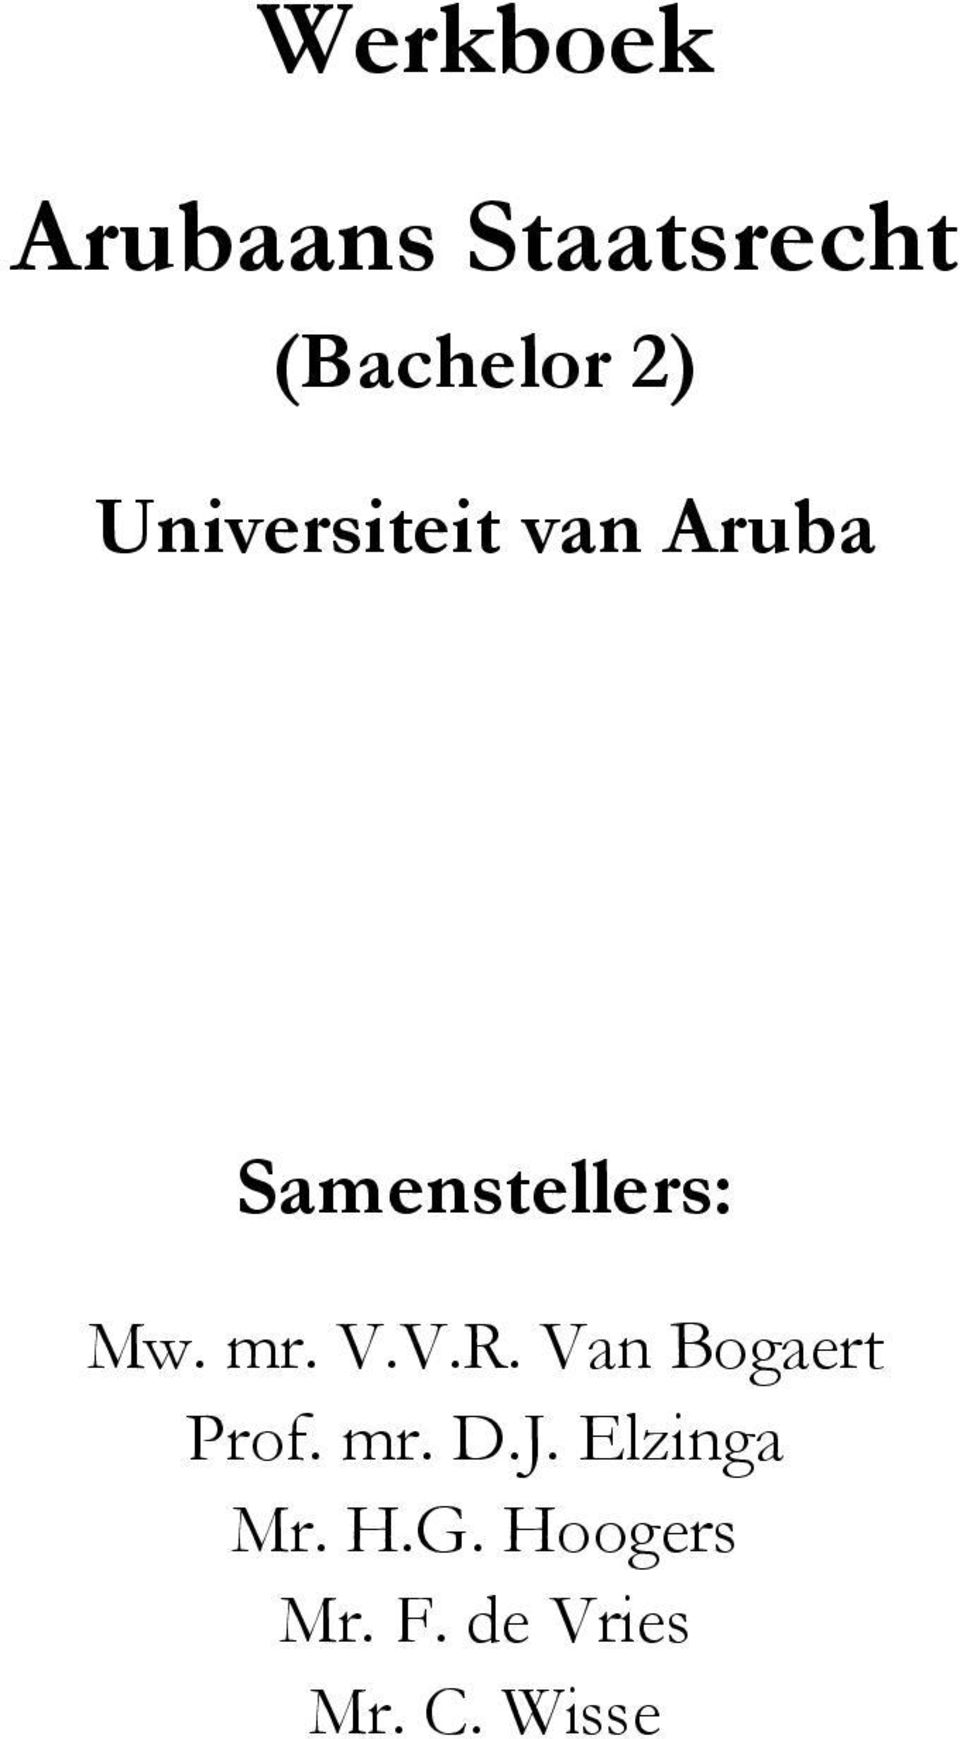 mr. V.V.R. Van Bogaert Prof. mr. D.J.